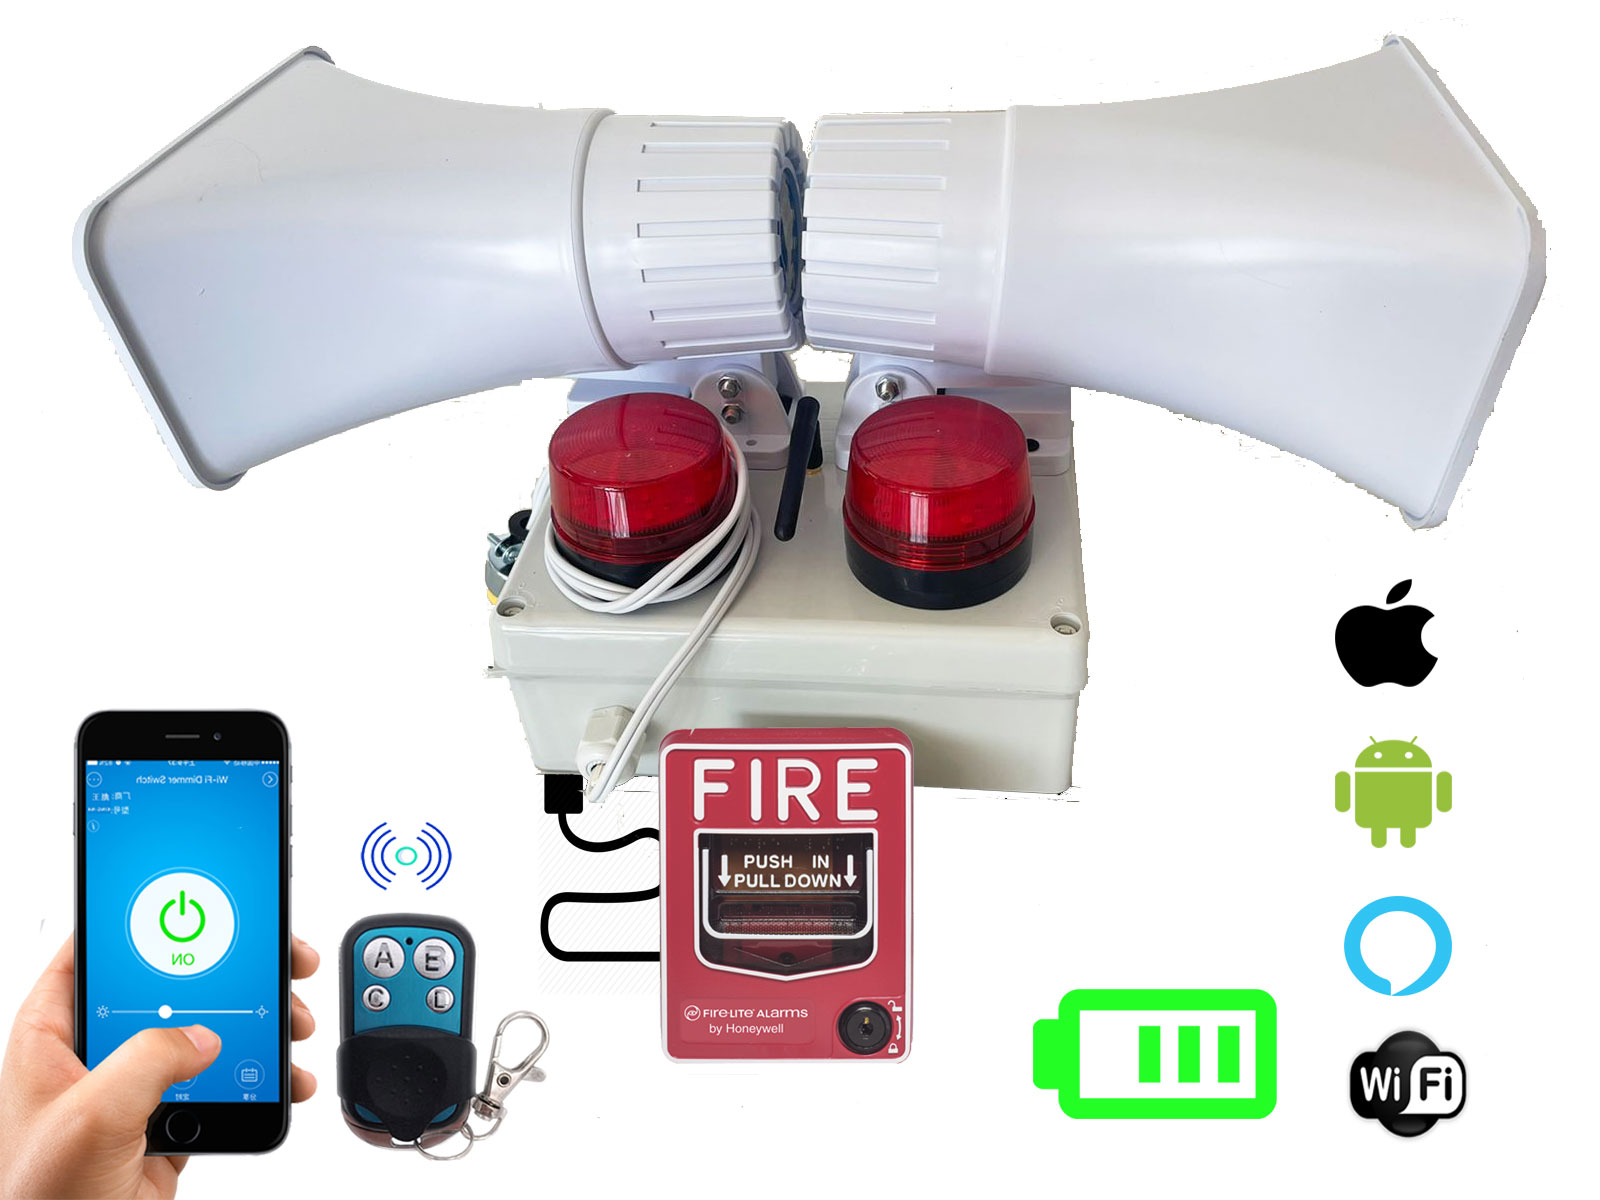 Alarma Vecinal Wifi Rf Boton Fire Doble Sirena Bateria App